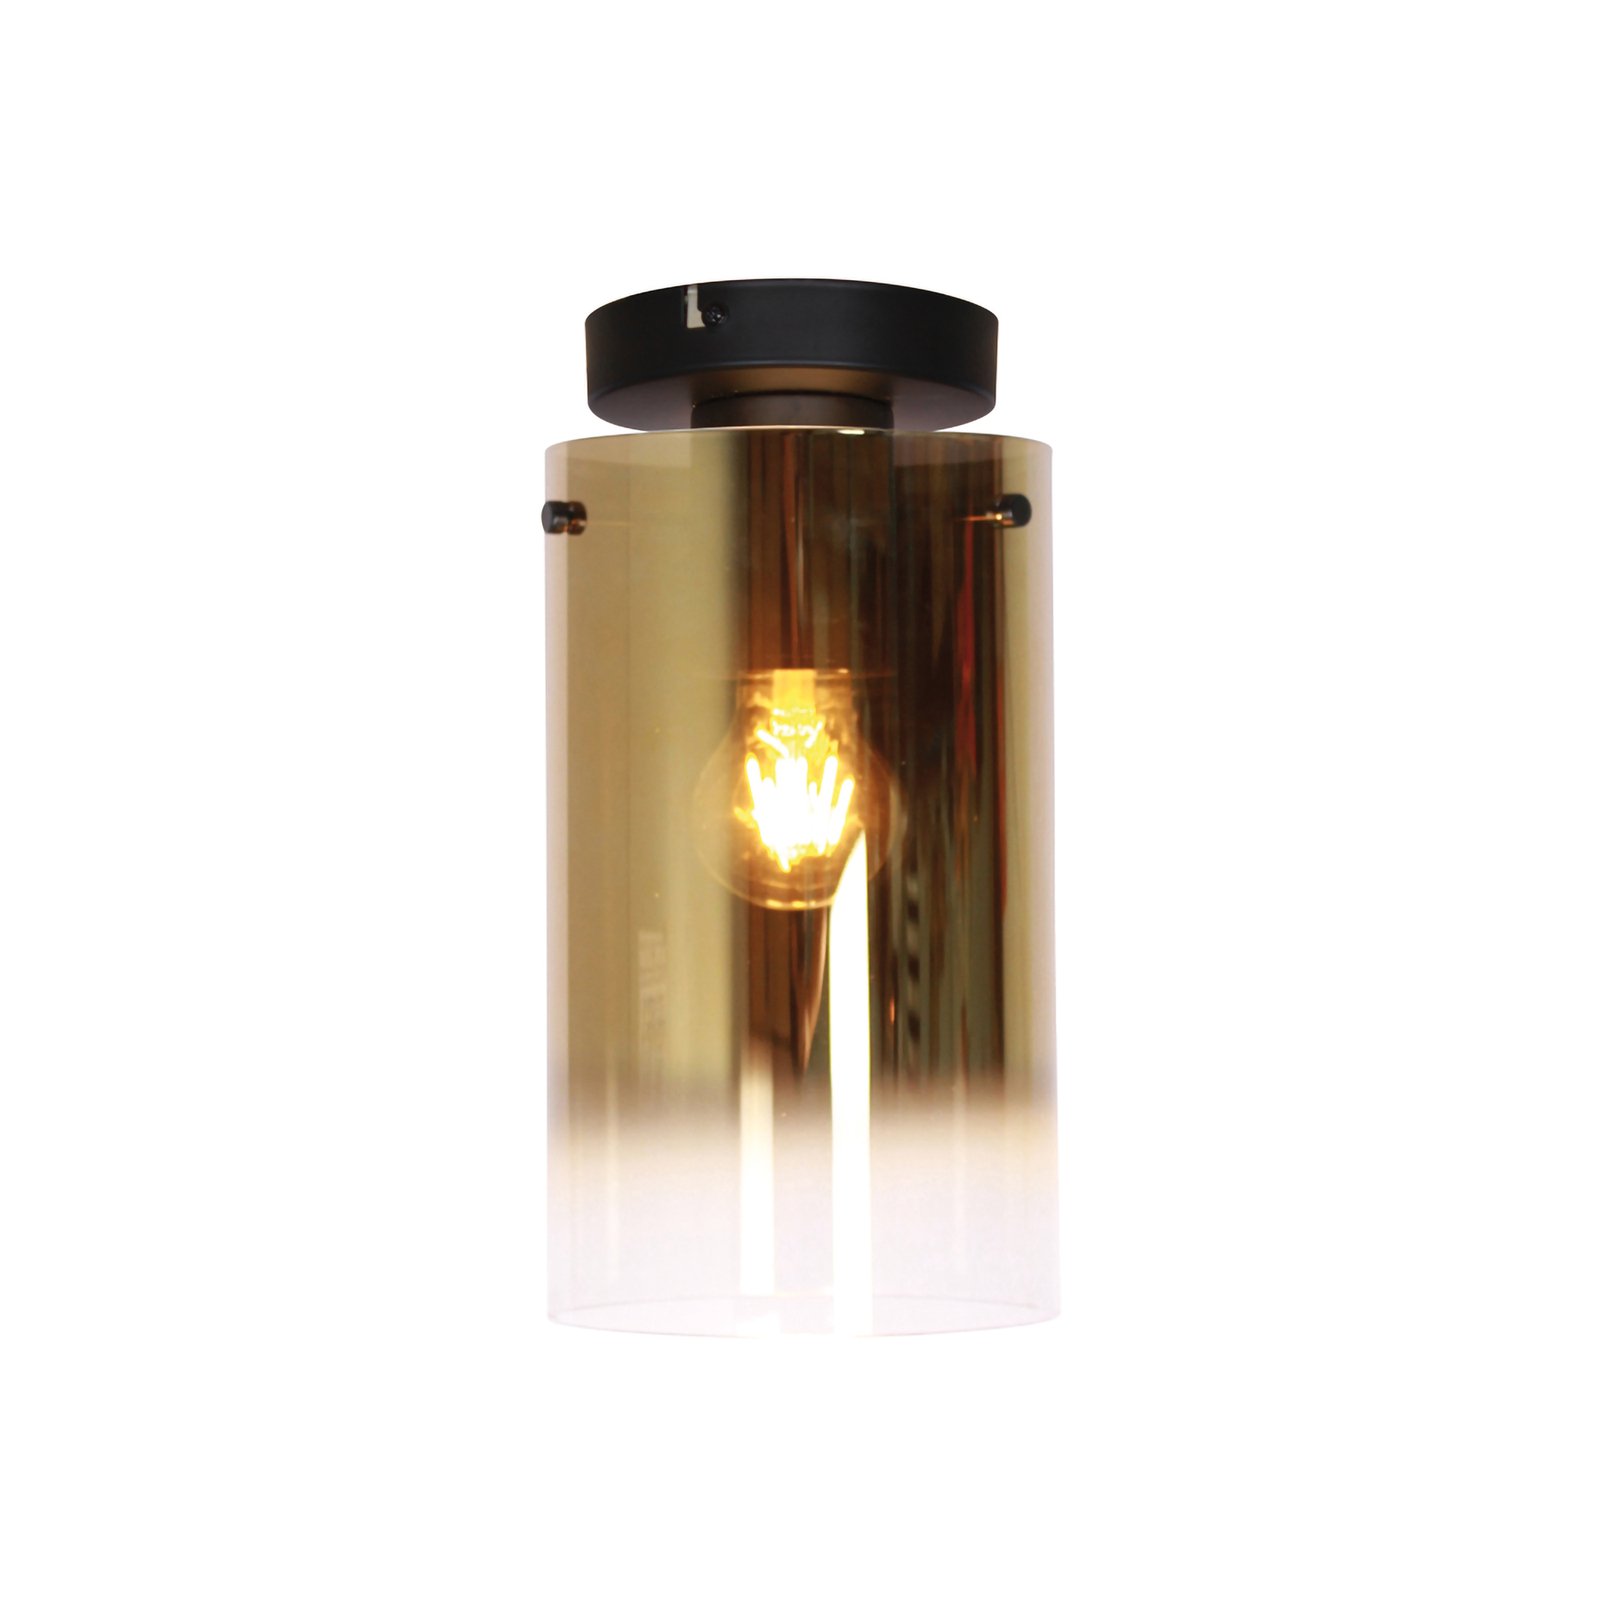 Deckenlampe Ventotto, schwarz/gold, Ø 15 cm, Glas